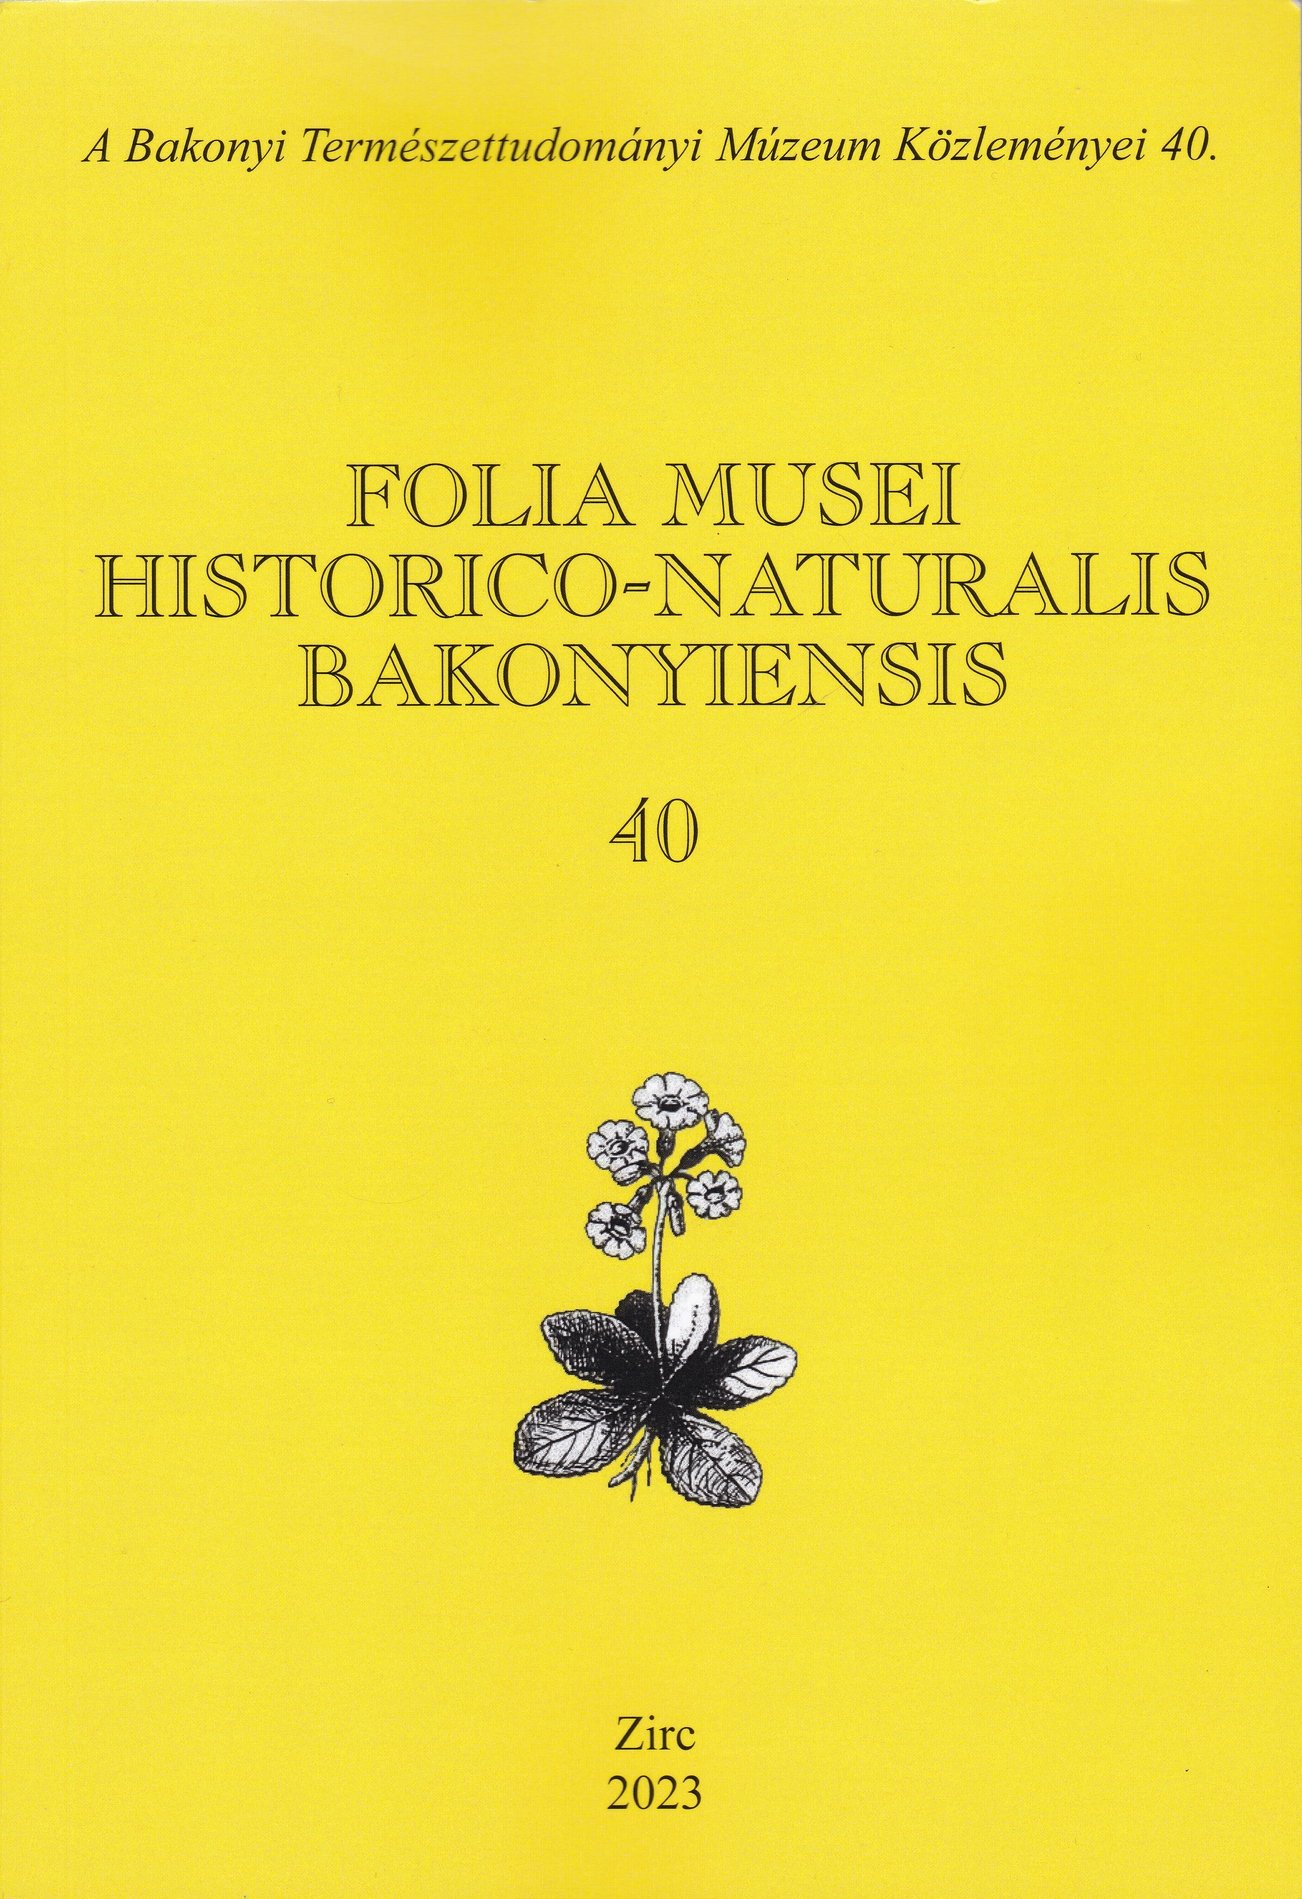 Folia Musei Historico-Naturalis Bakonyiensis. A Bakonyi Természettudományi Múzeum Közleményei 2023/40. (Rippl-Rónai Múzeum CC BY-NC-ND)